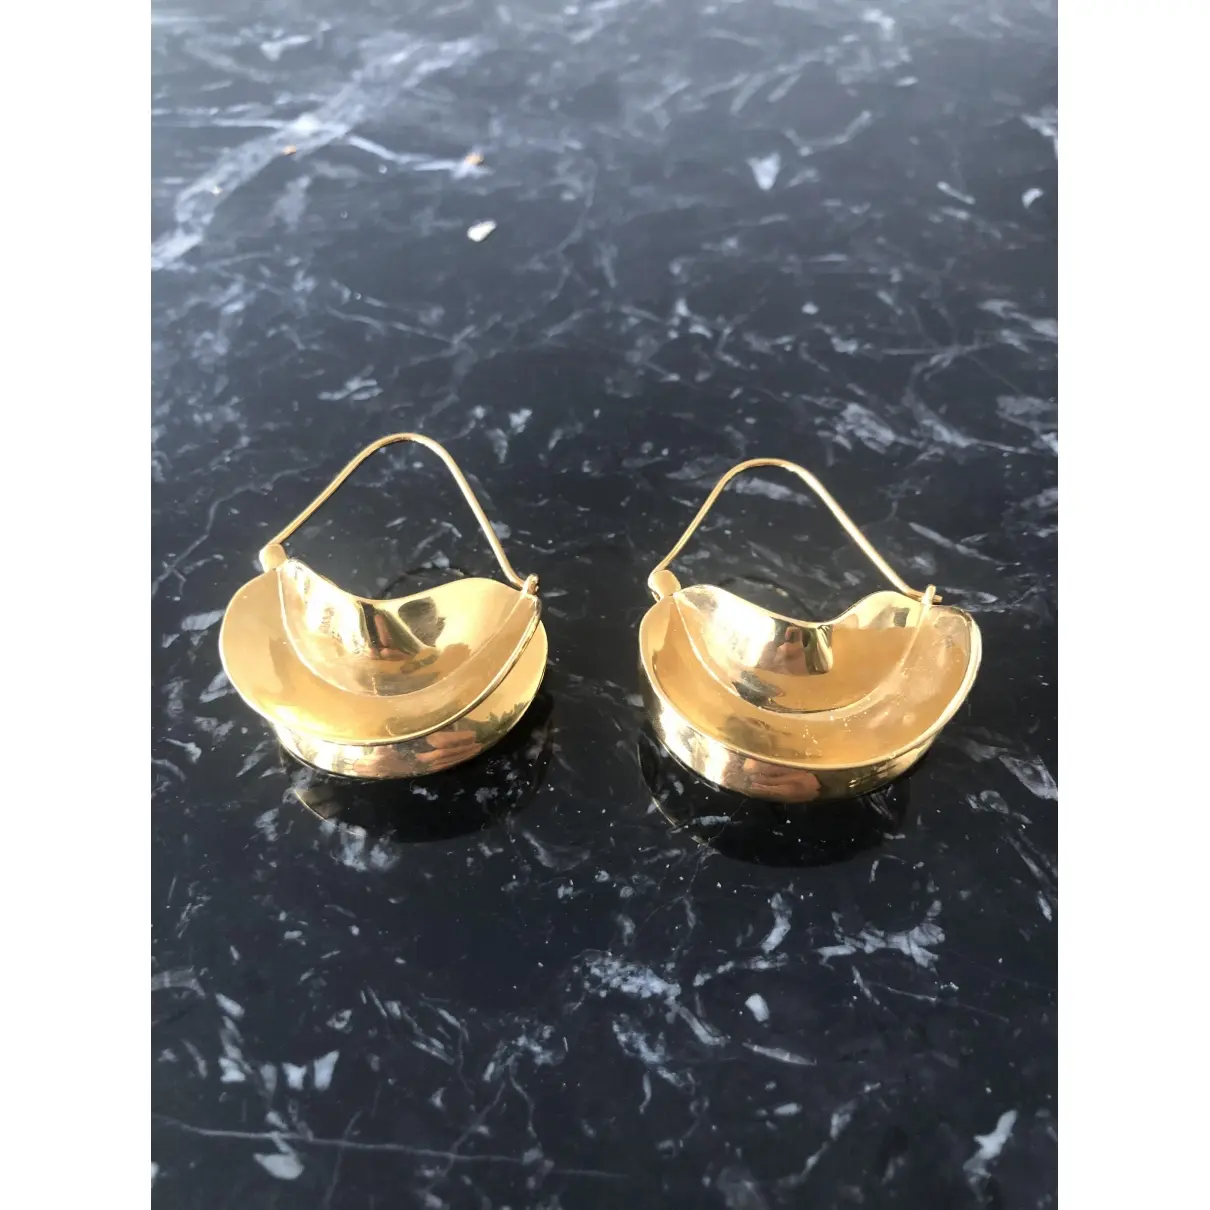 Buy Anissa Kermiche Yellow gold earrings online